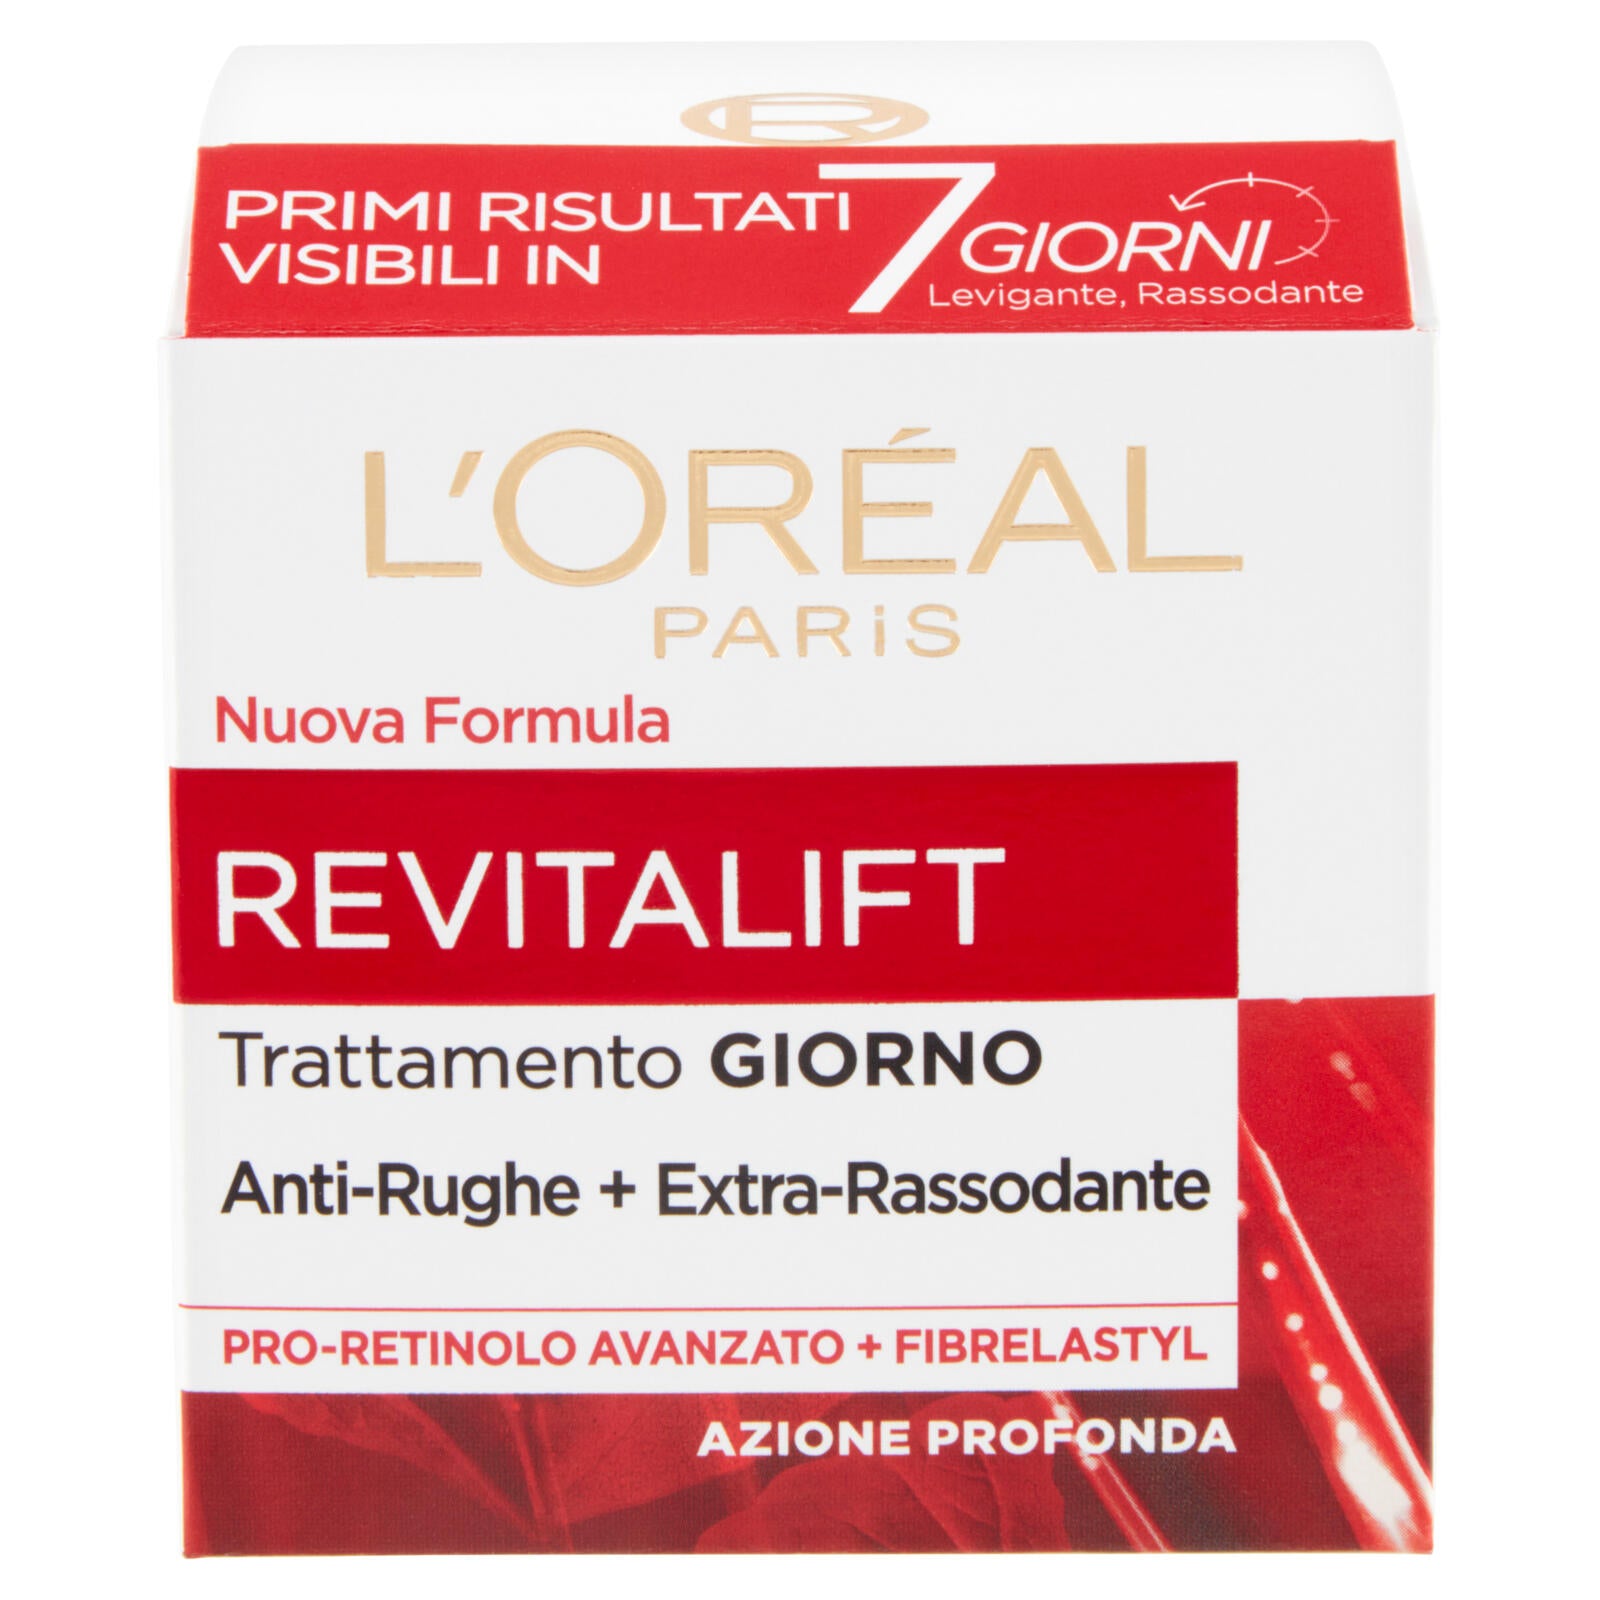 L'Oréal Paris Revitalift Giorno Trattamento giorno Idratante Multi-lift Anti-rughe, 50 ml